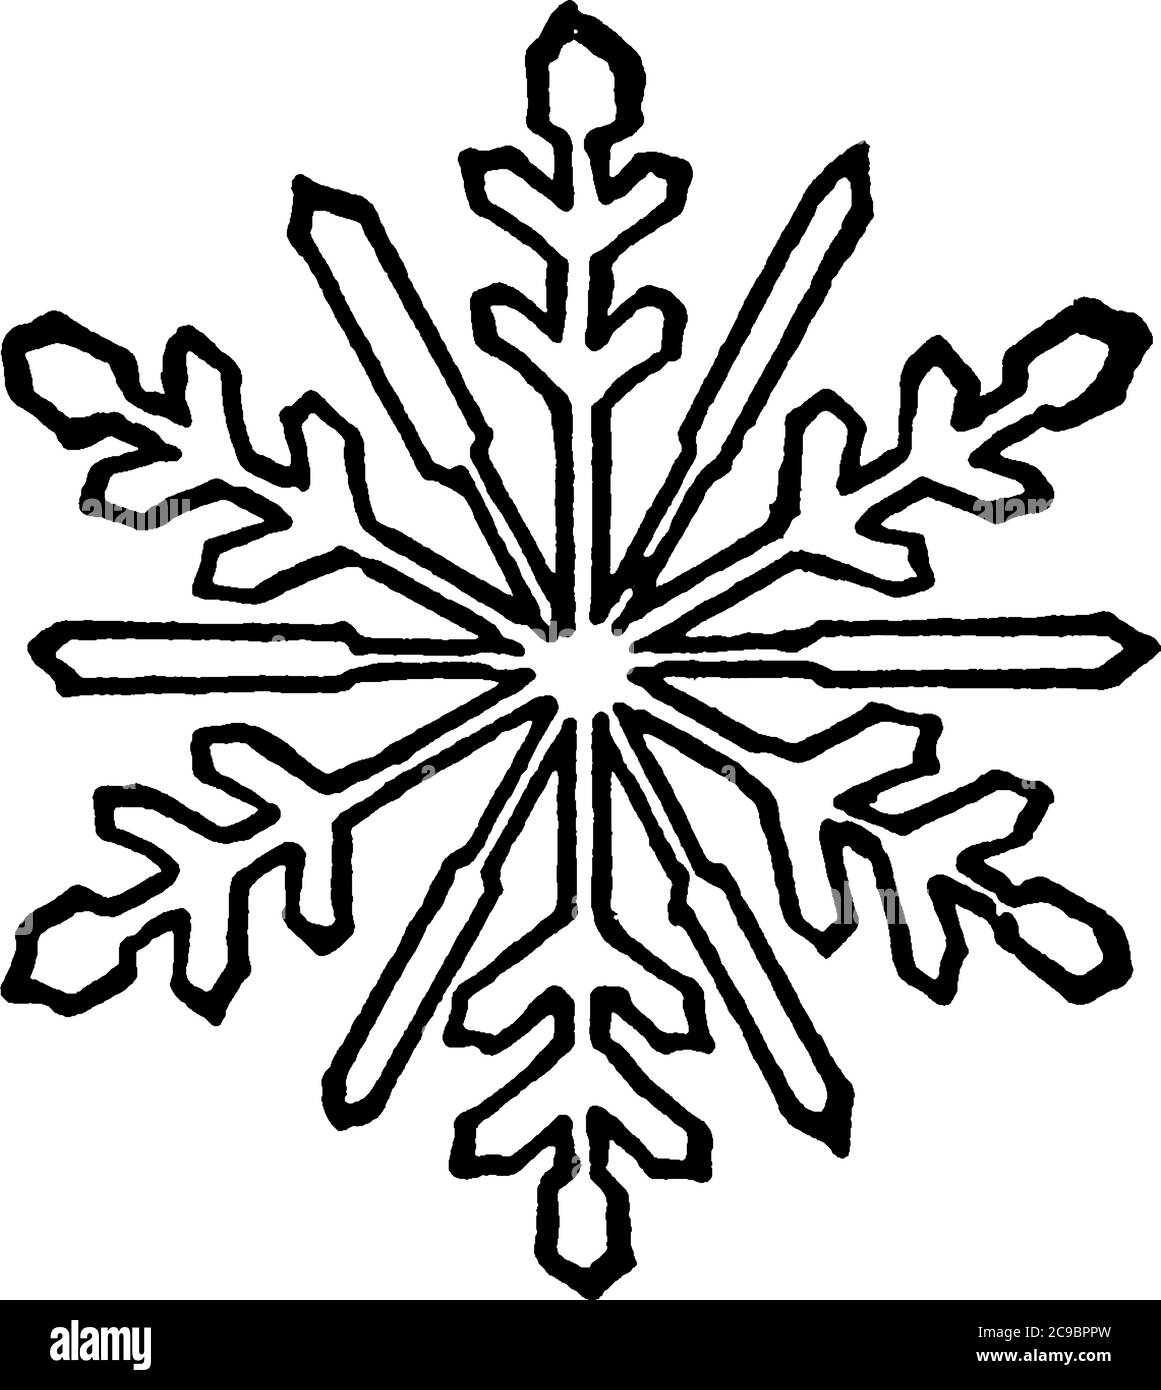 Ein federleichtes Eiskristall, die Schneeflocke, zeigt eine zarte sechsfache Symmetrie, vintage Linie Zeichnung oder Gravur Illustration. Stock Vektor